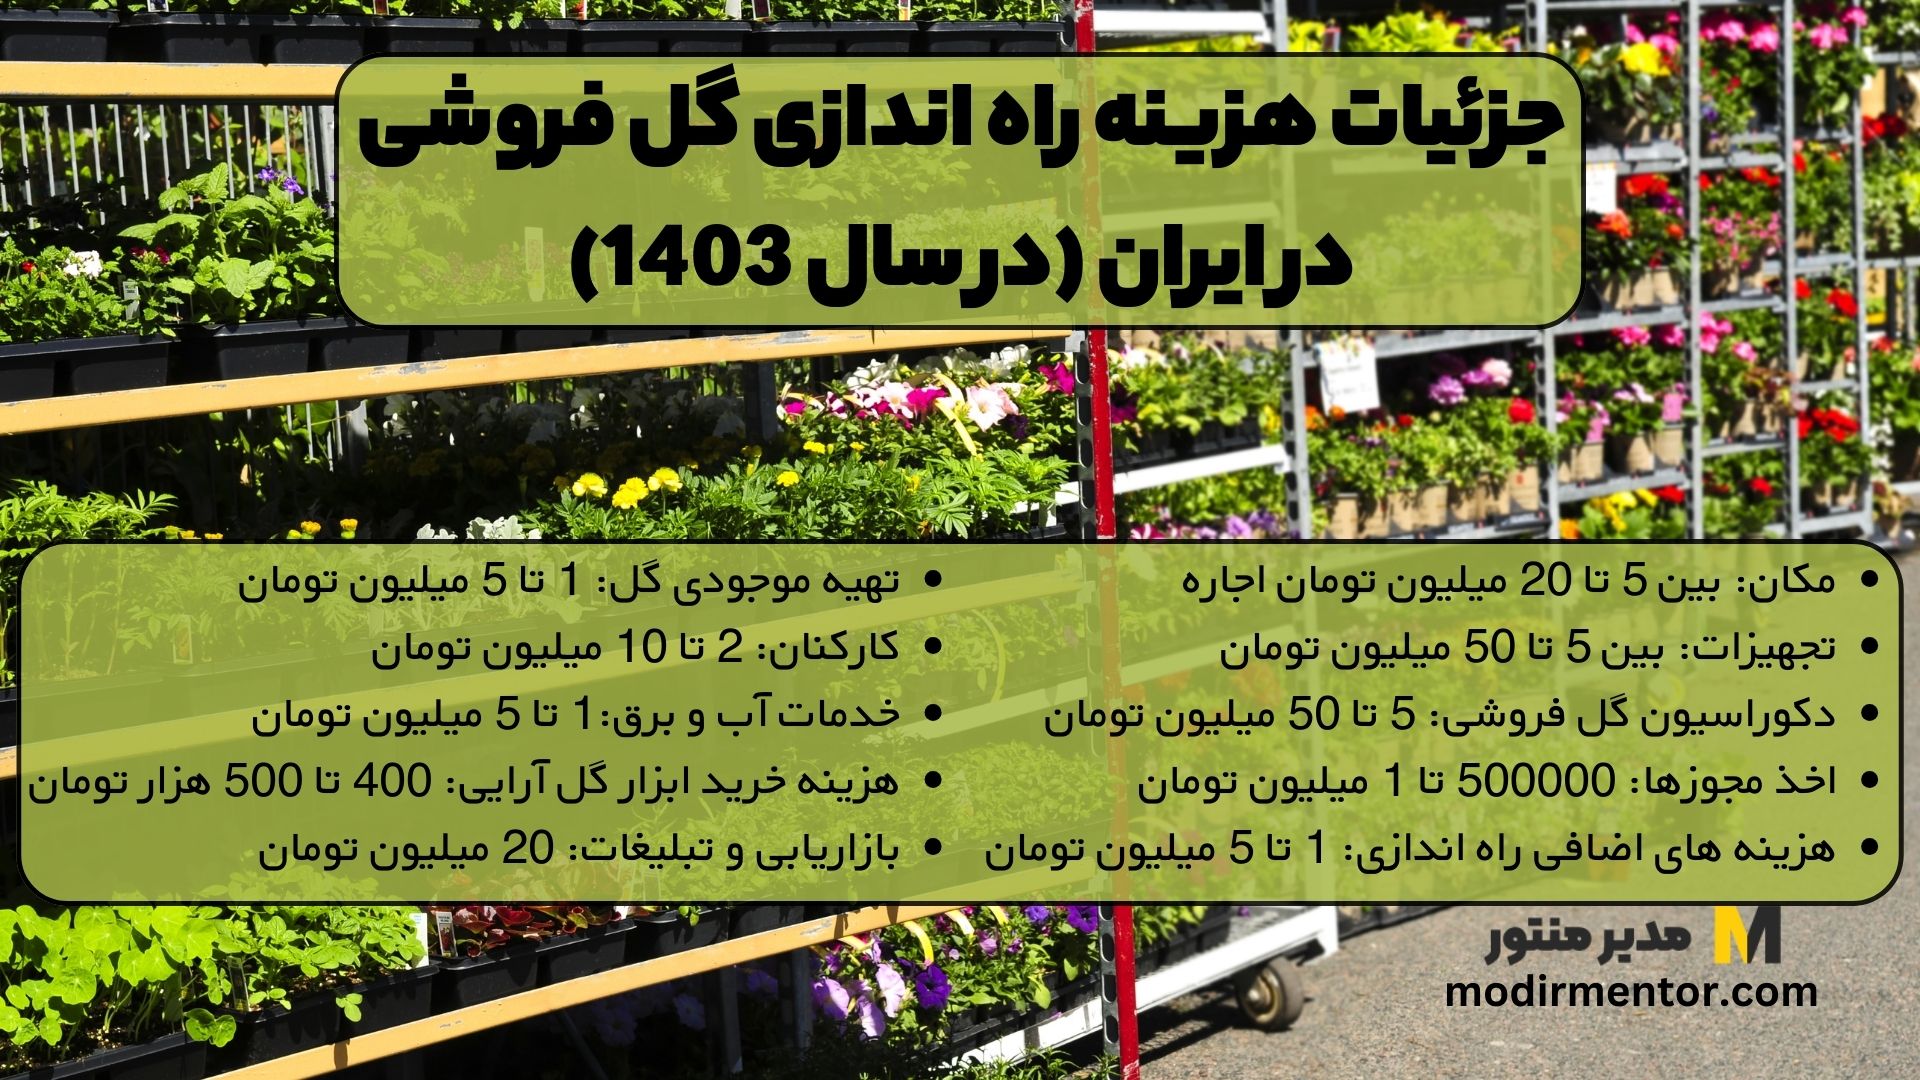 جزئیات هزینه راه اندازی گل فروشی در ایران (در سال 1403)